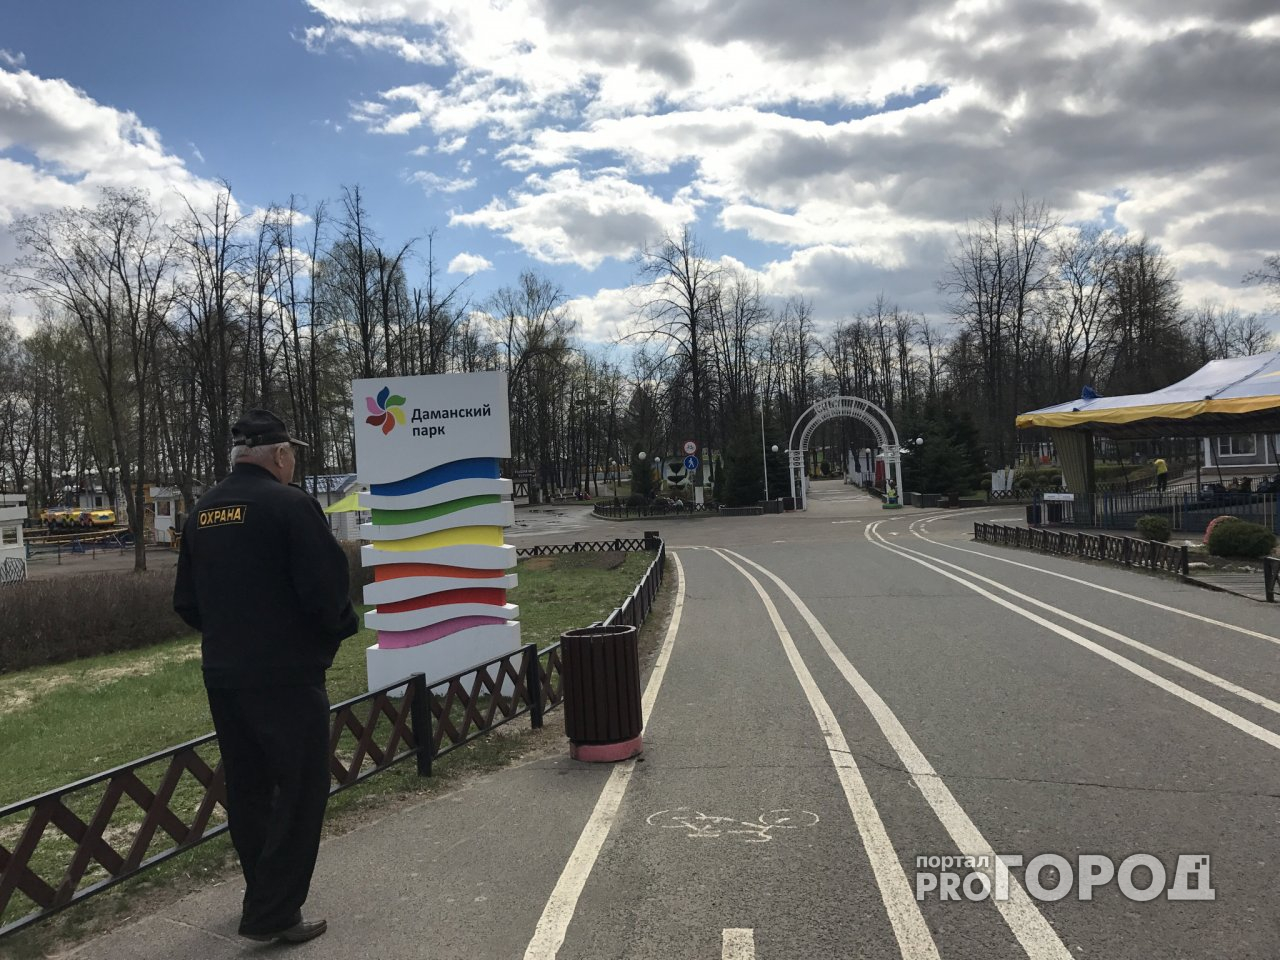 Новые аттракционы, дом страха и терминалы для покупки билетов: как изменят ярославские парки